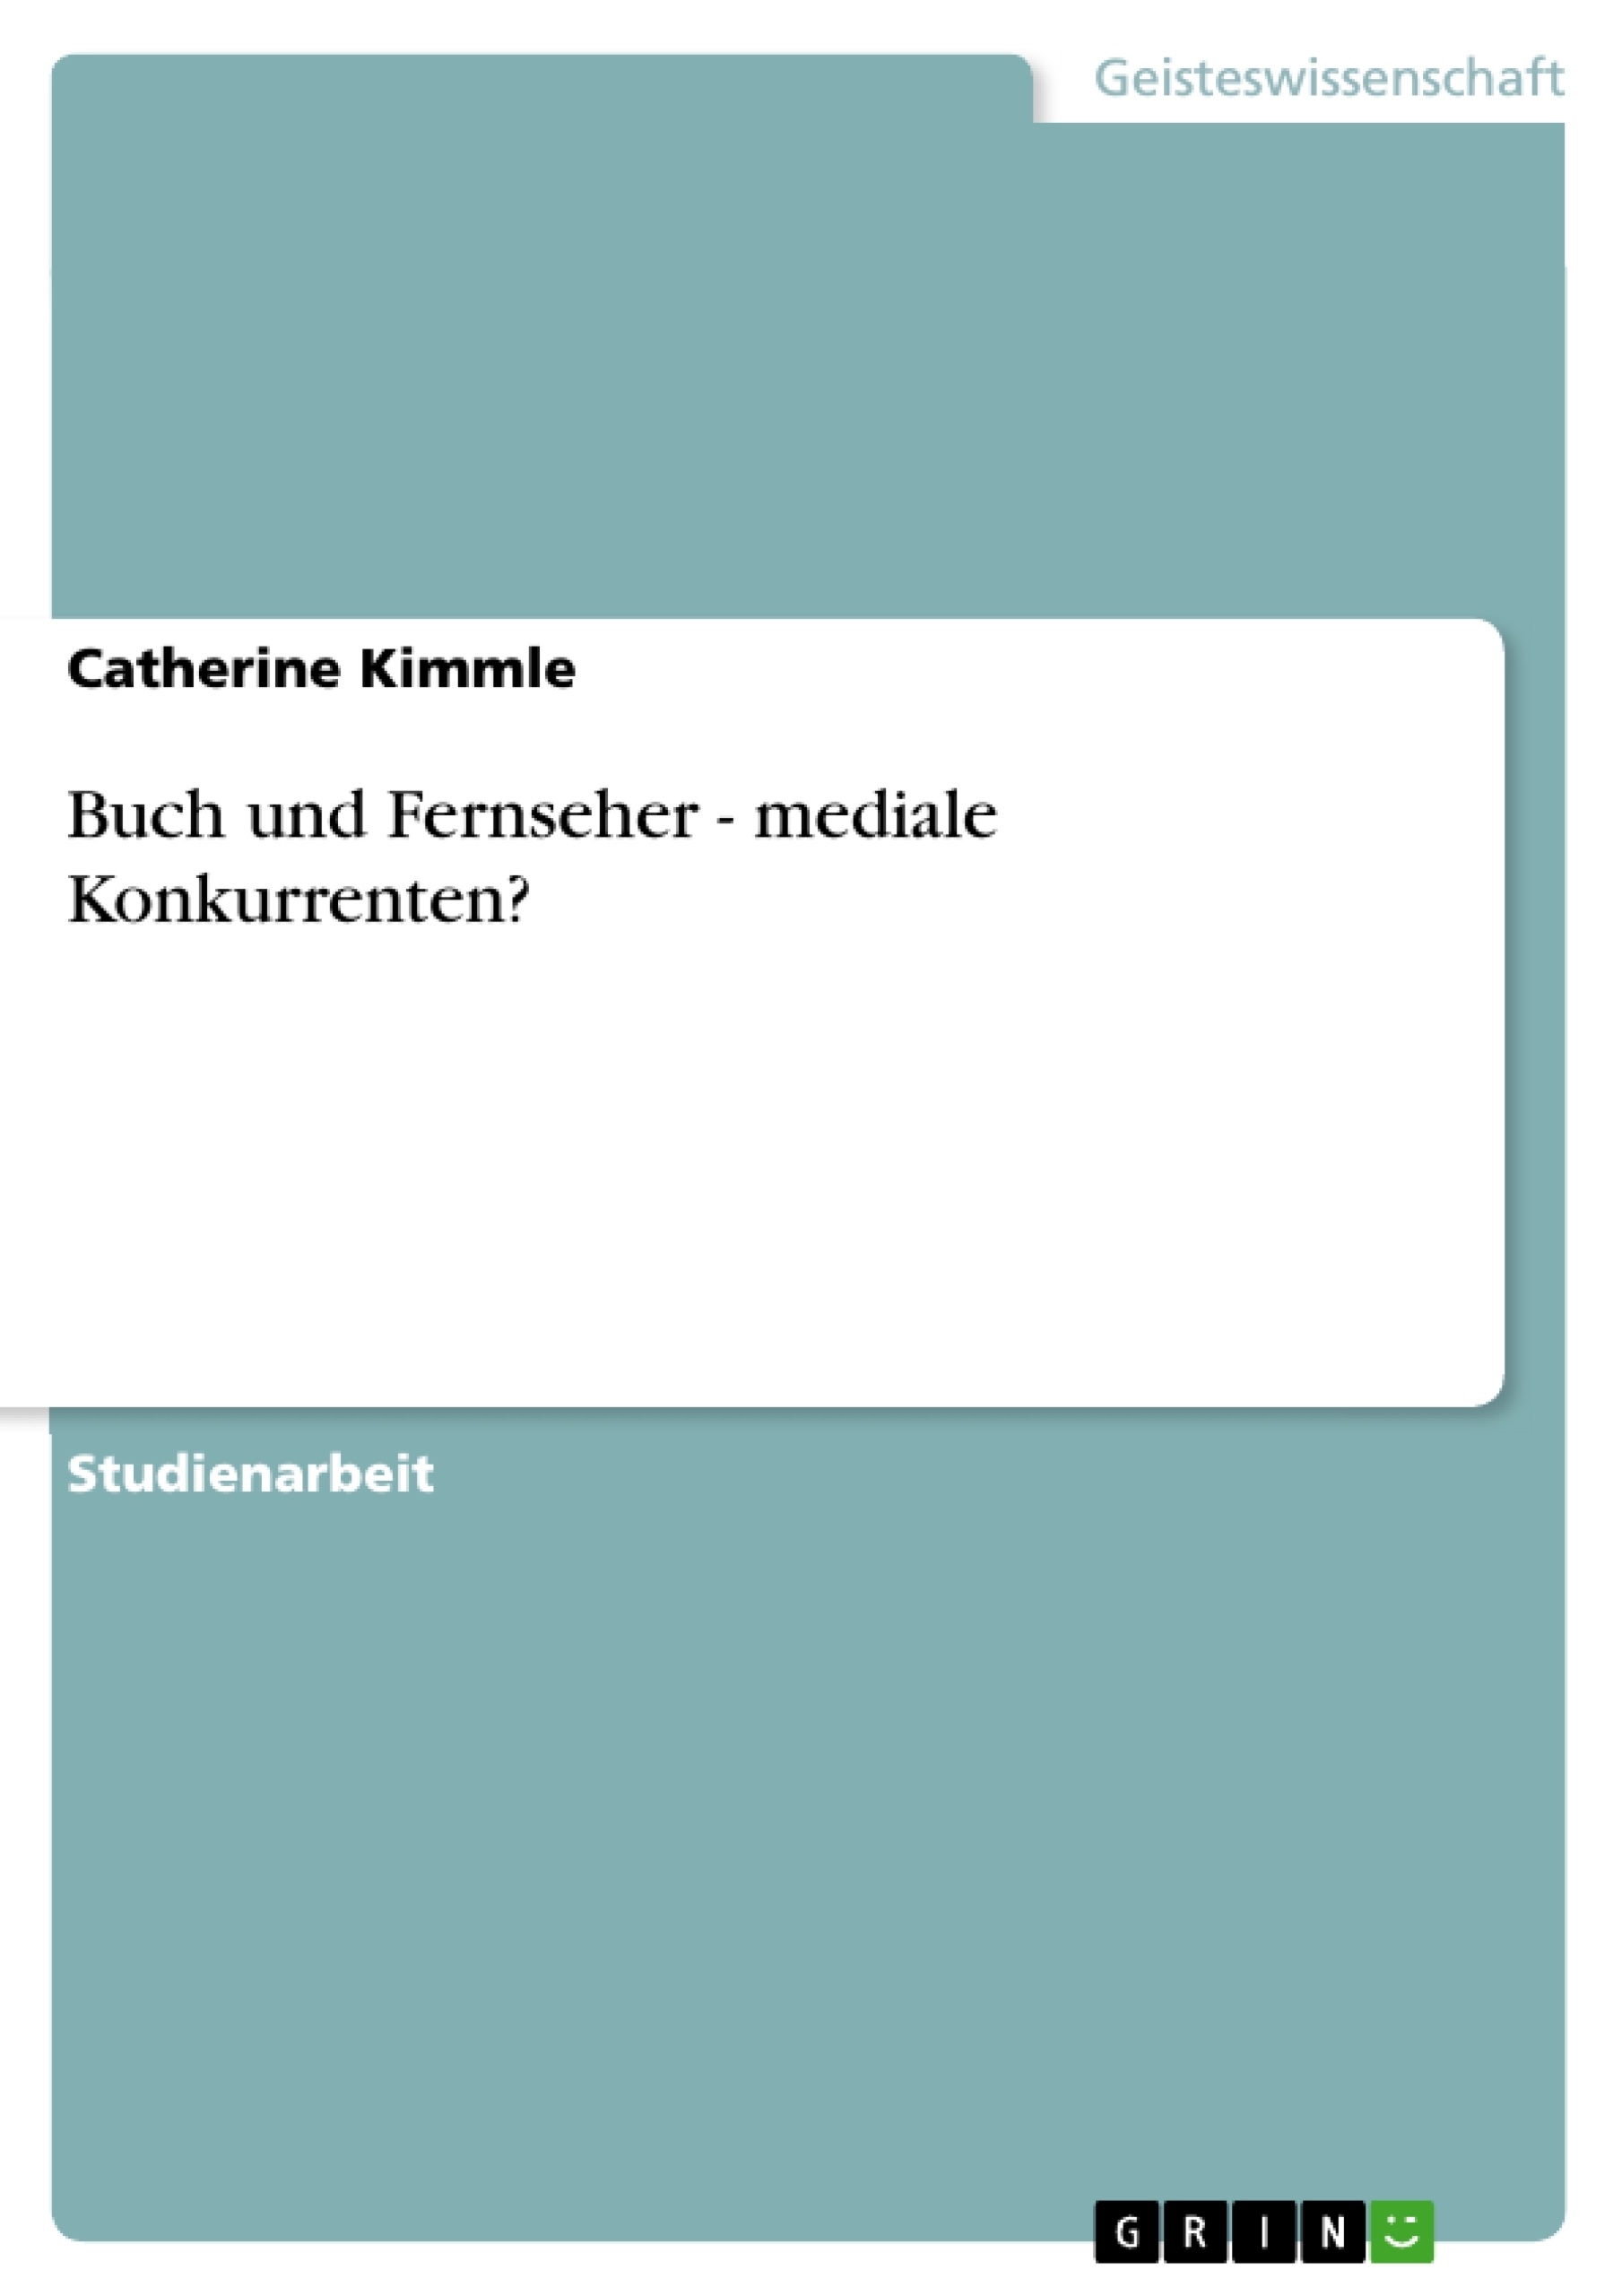 Titre: Buch und Fernseher - mediale Konkurrenten?